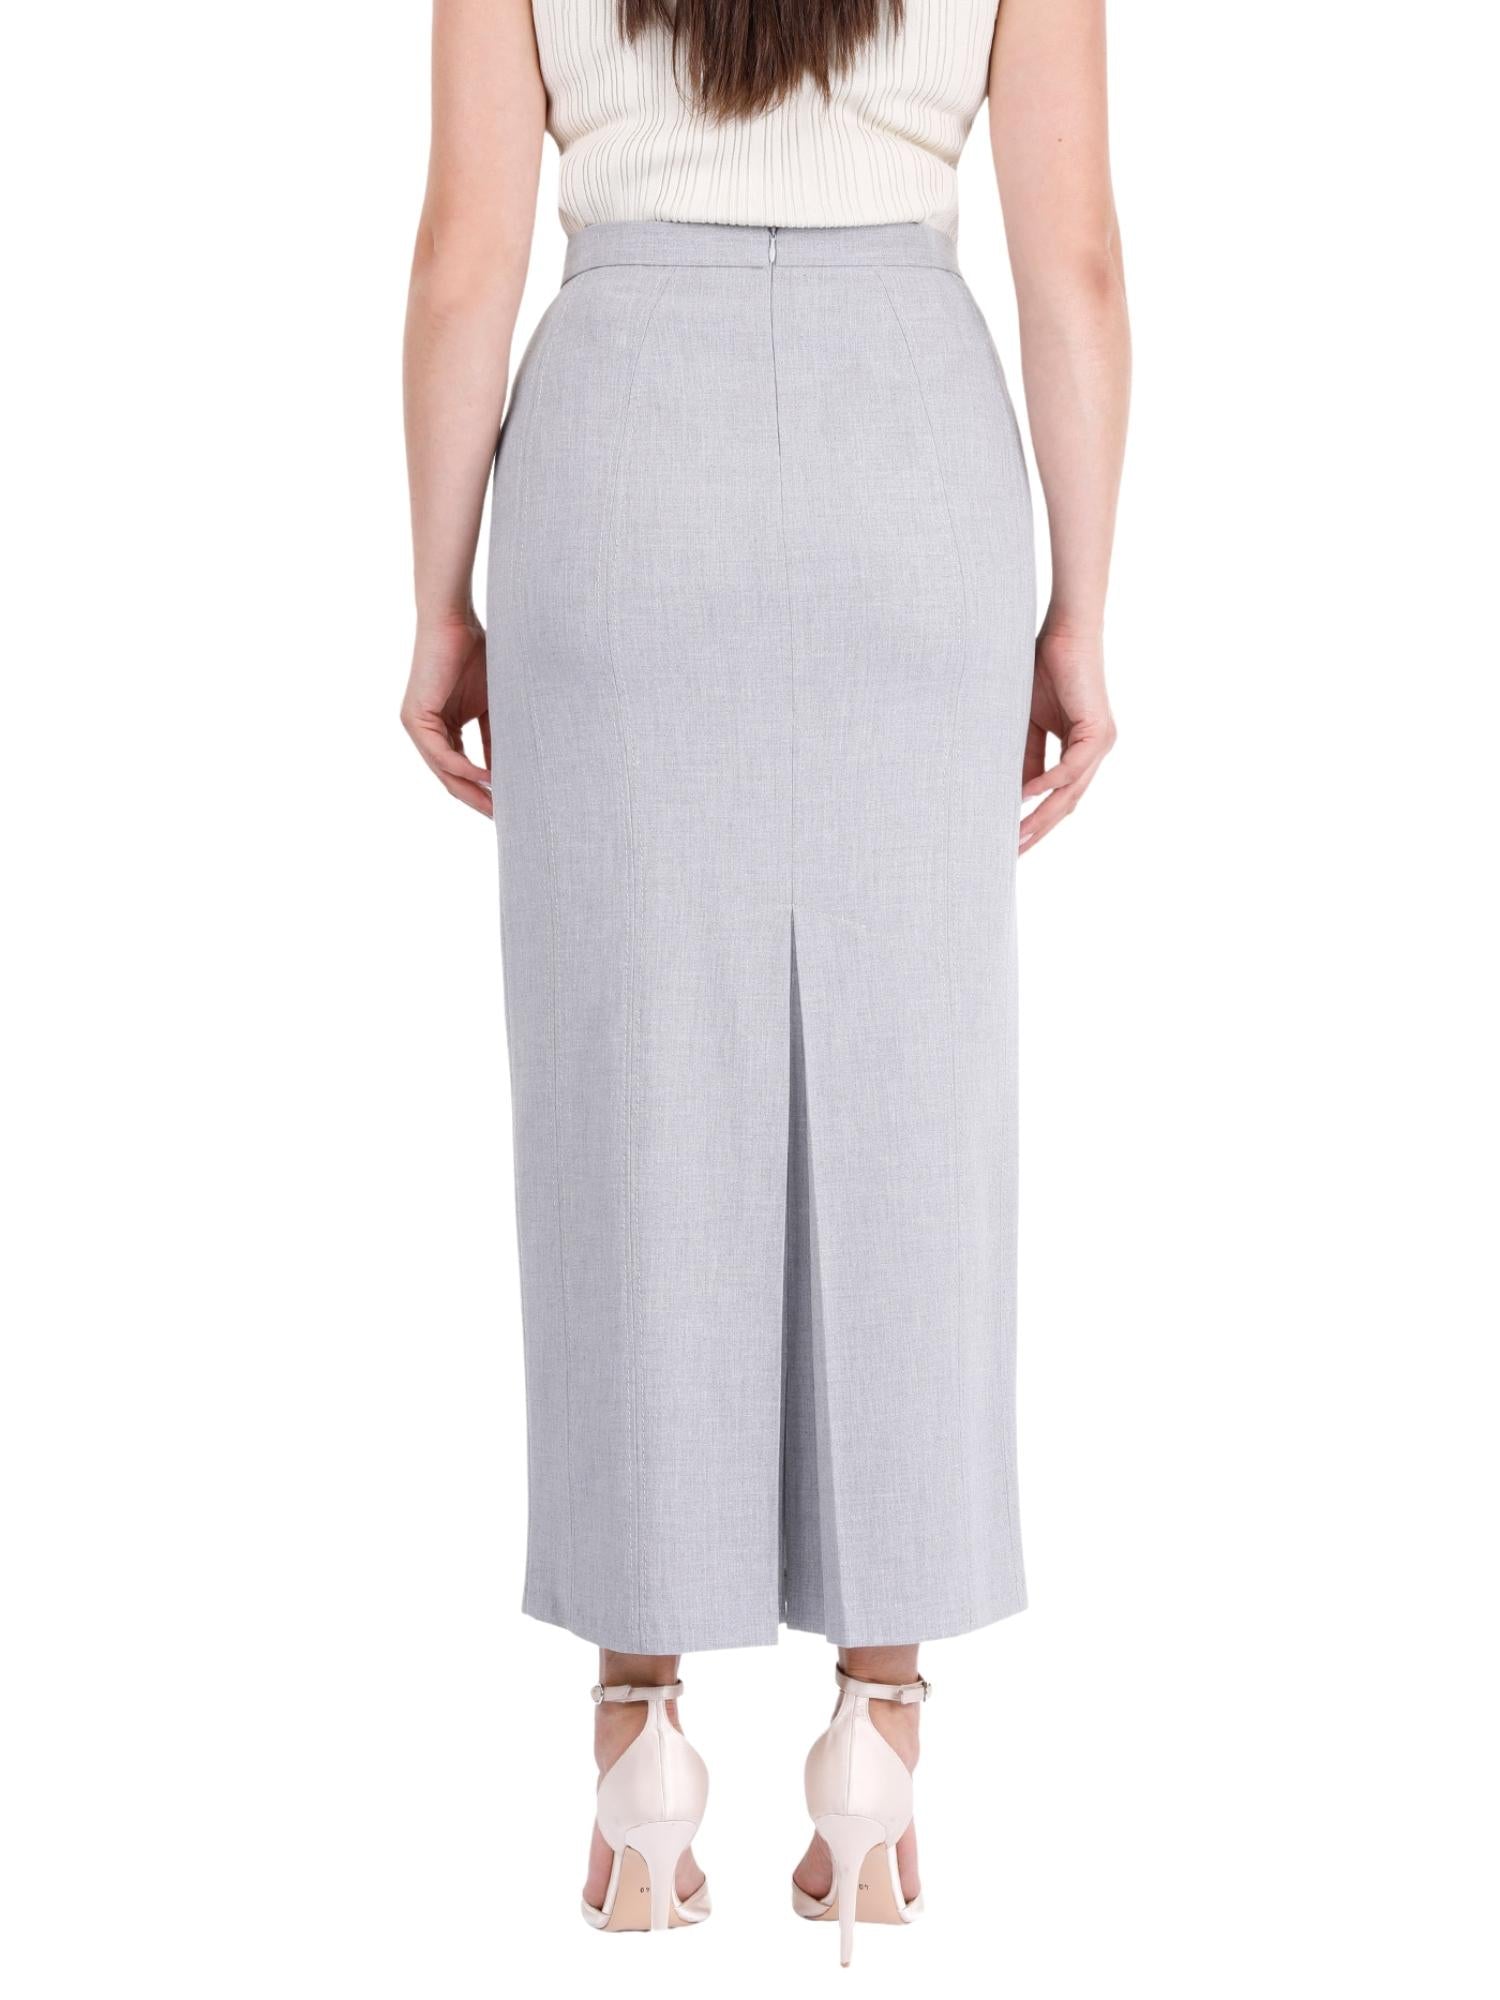 Light Grey Ankle Length Women's Plus Size Back Split Maxi Skirt G-Line